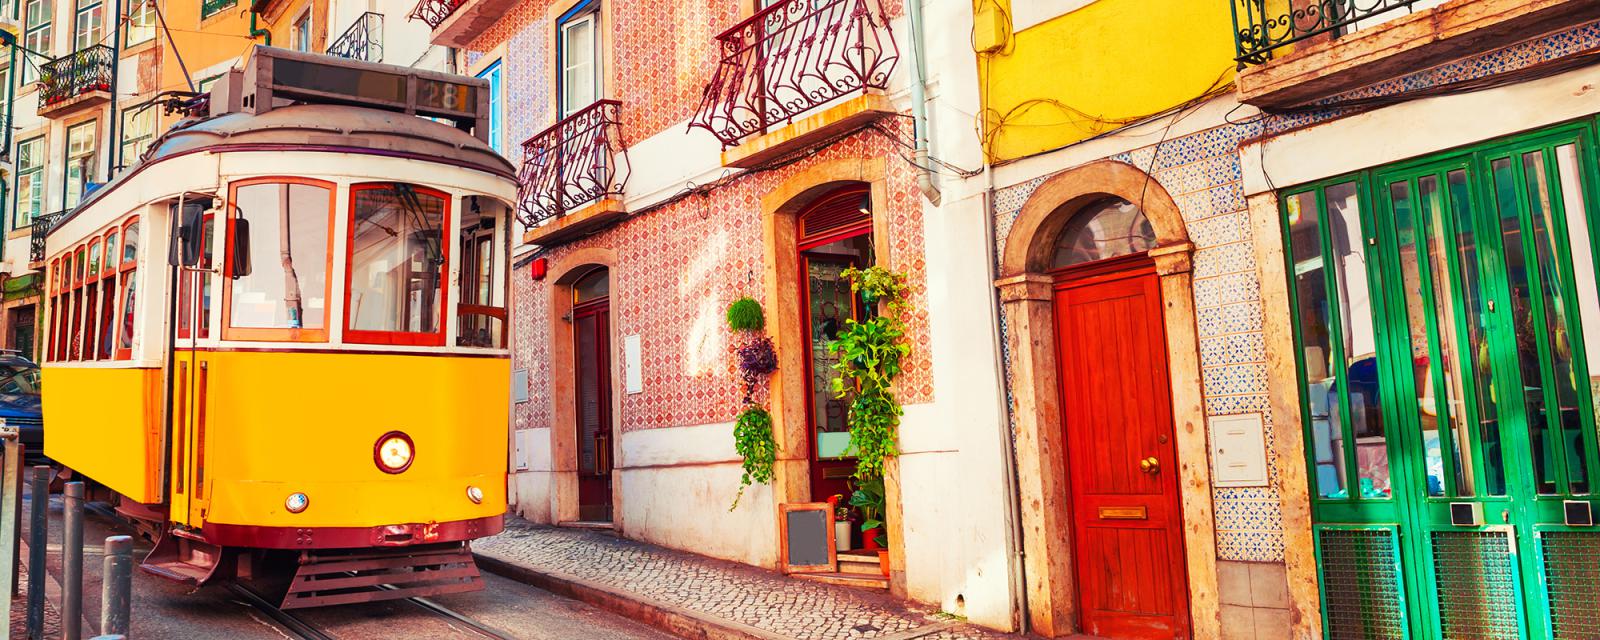 Inspiratie | Tips voor je stedentrip naar Lissabon 